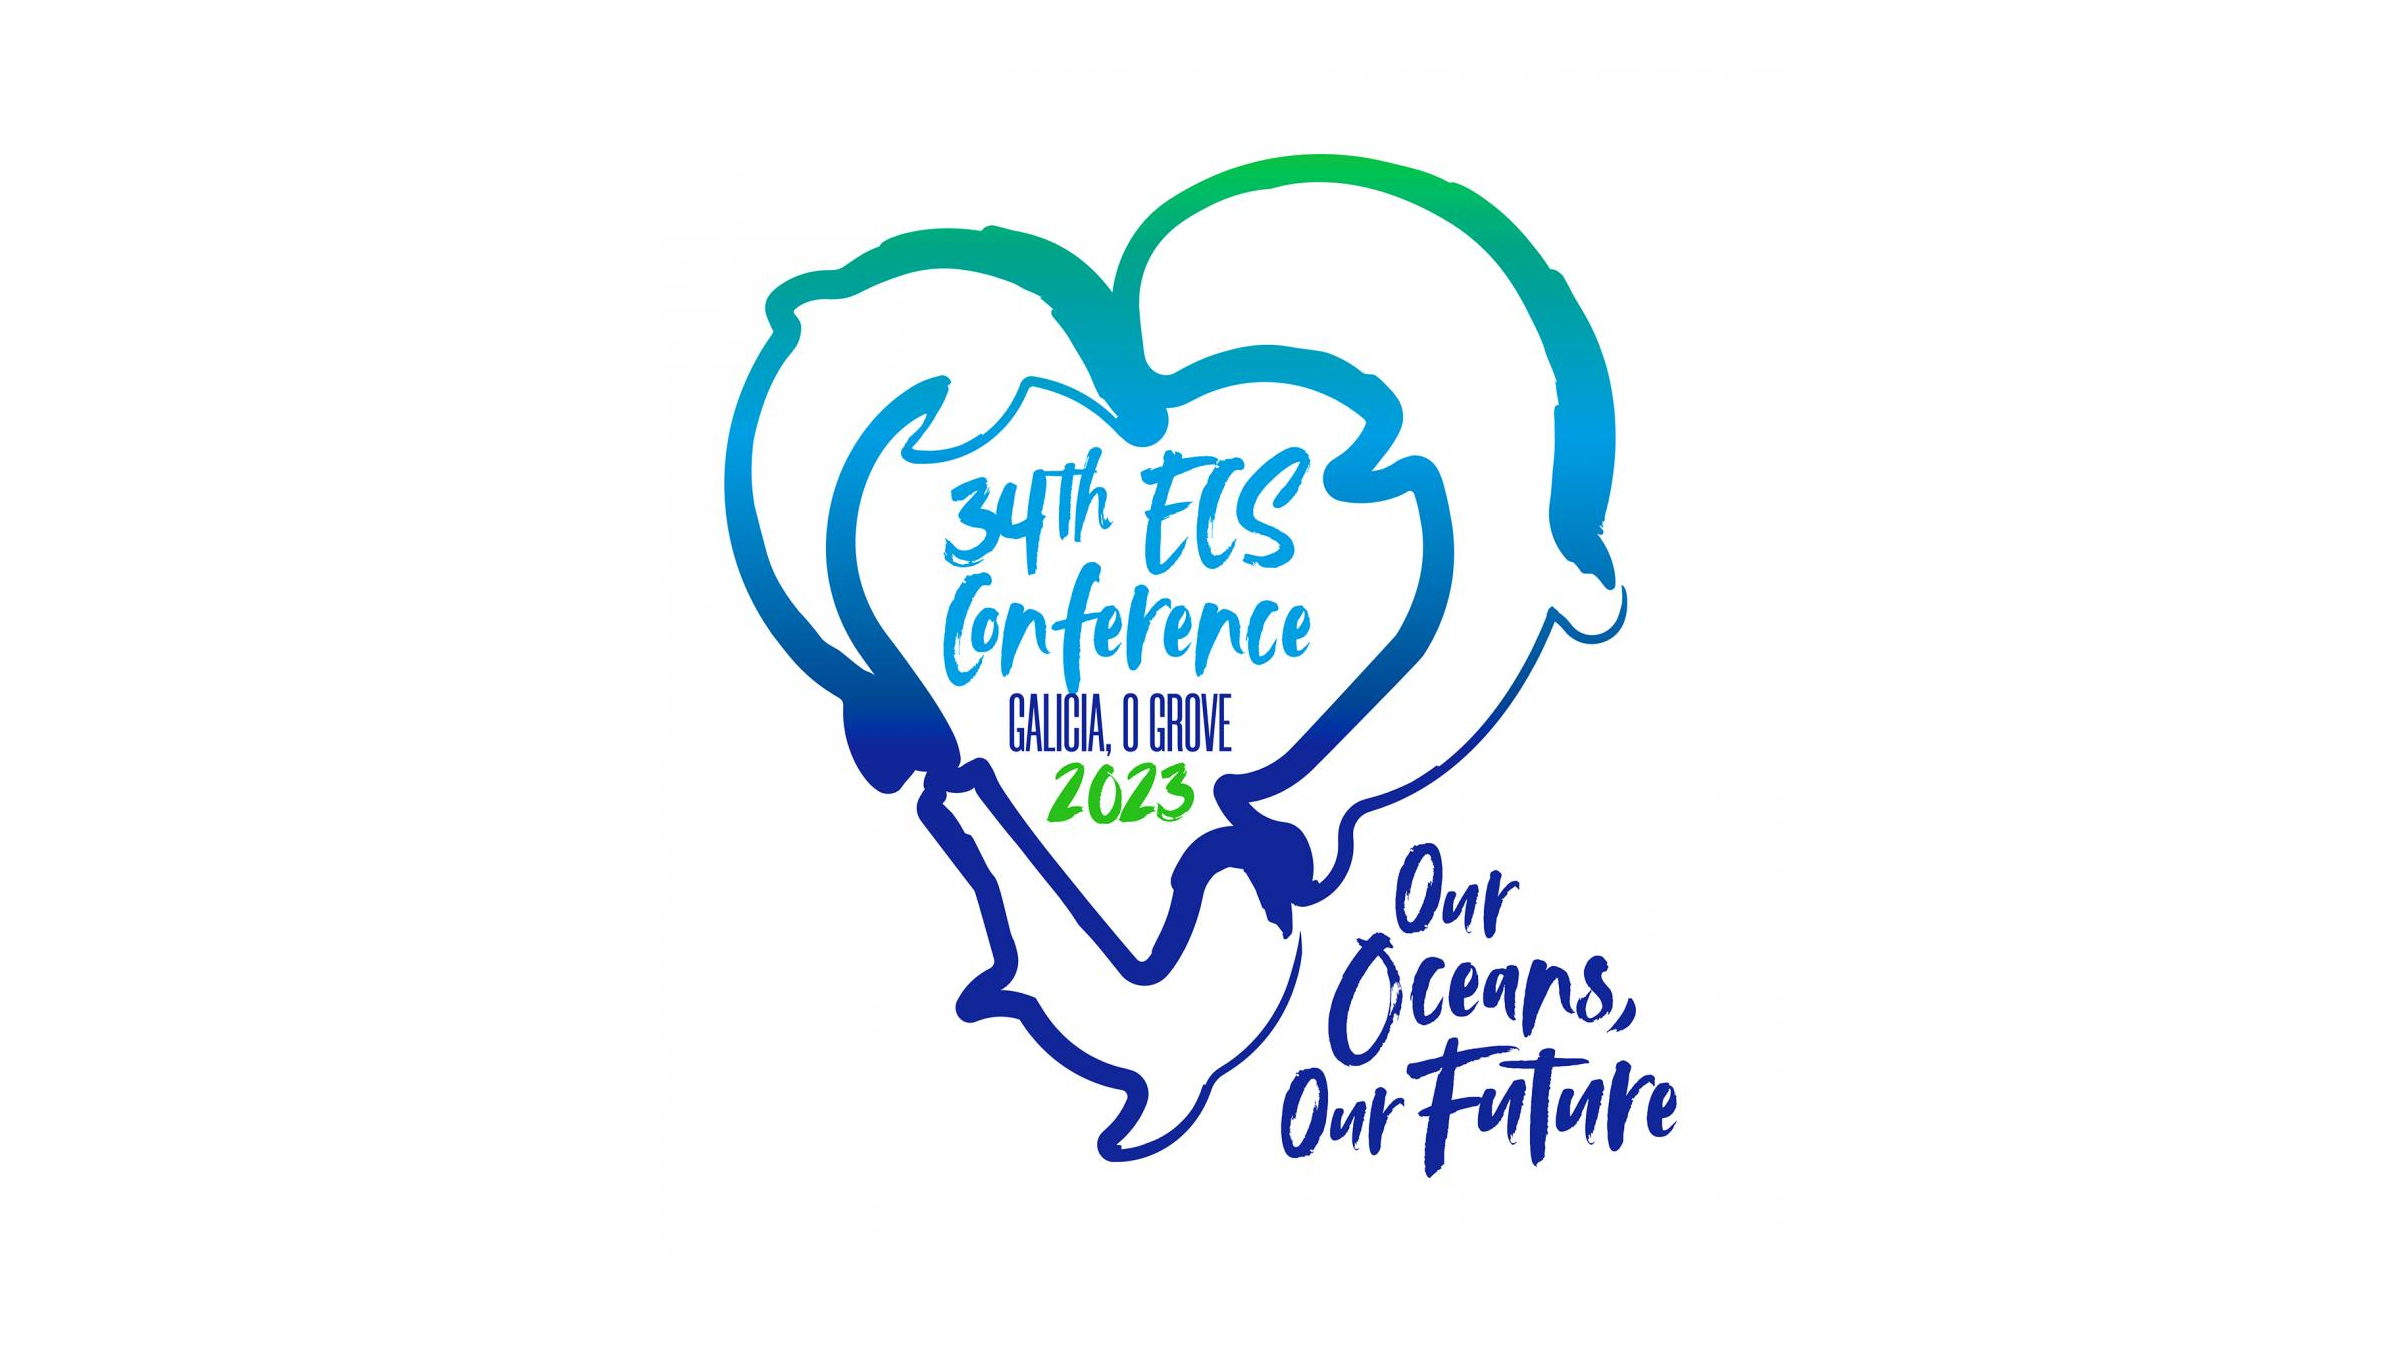 Logo der 34. Konferenz der European Cetacean Society